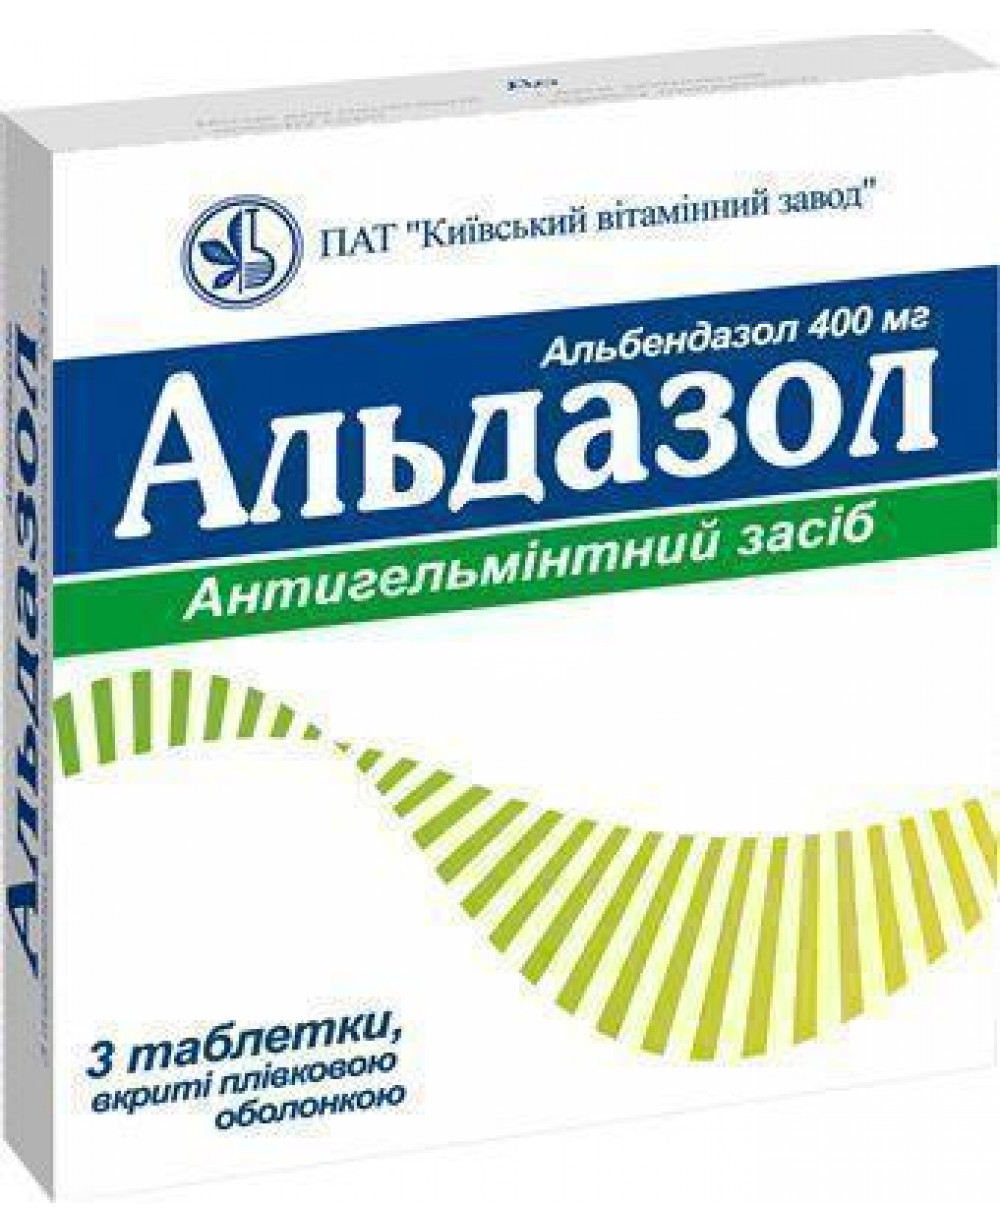 Антигельминтные препараты широкого спектра действия для человека. Альдазол. Противоглистные таблетки. Адазол 400. Альбендазол от глистов.